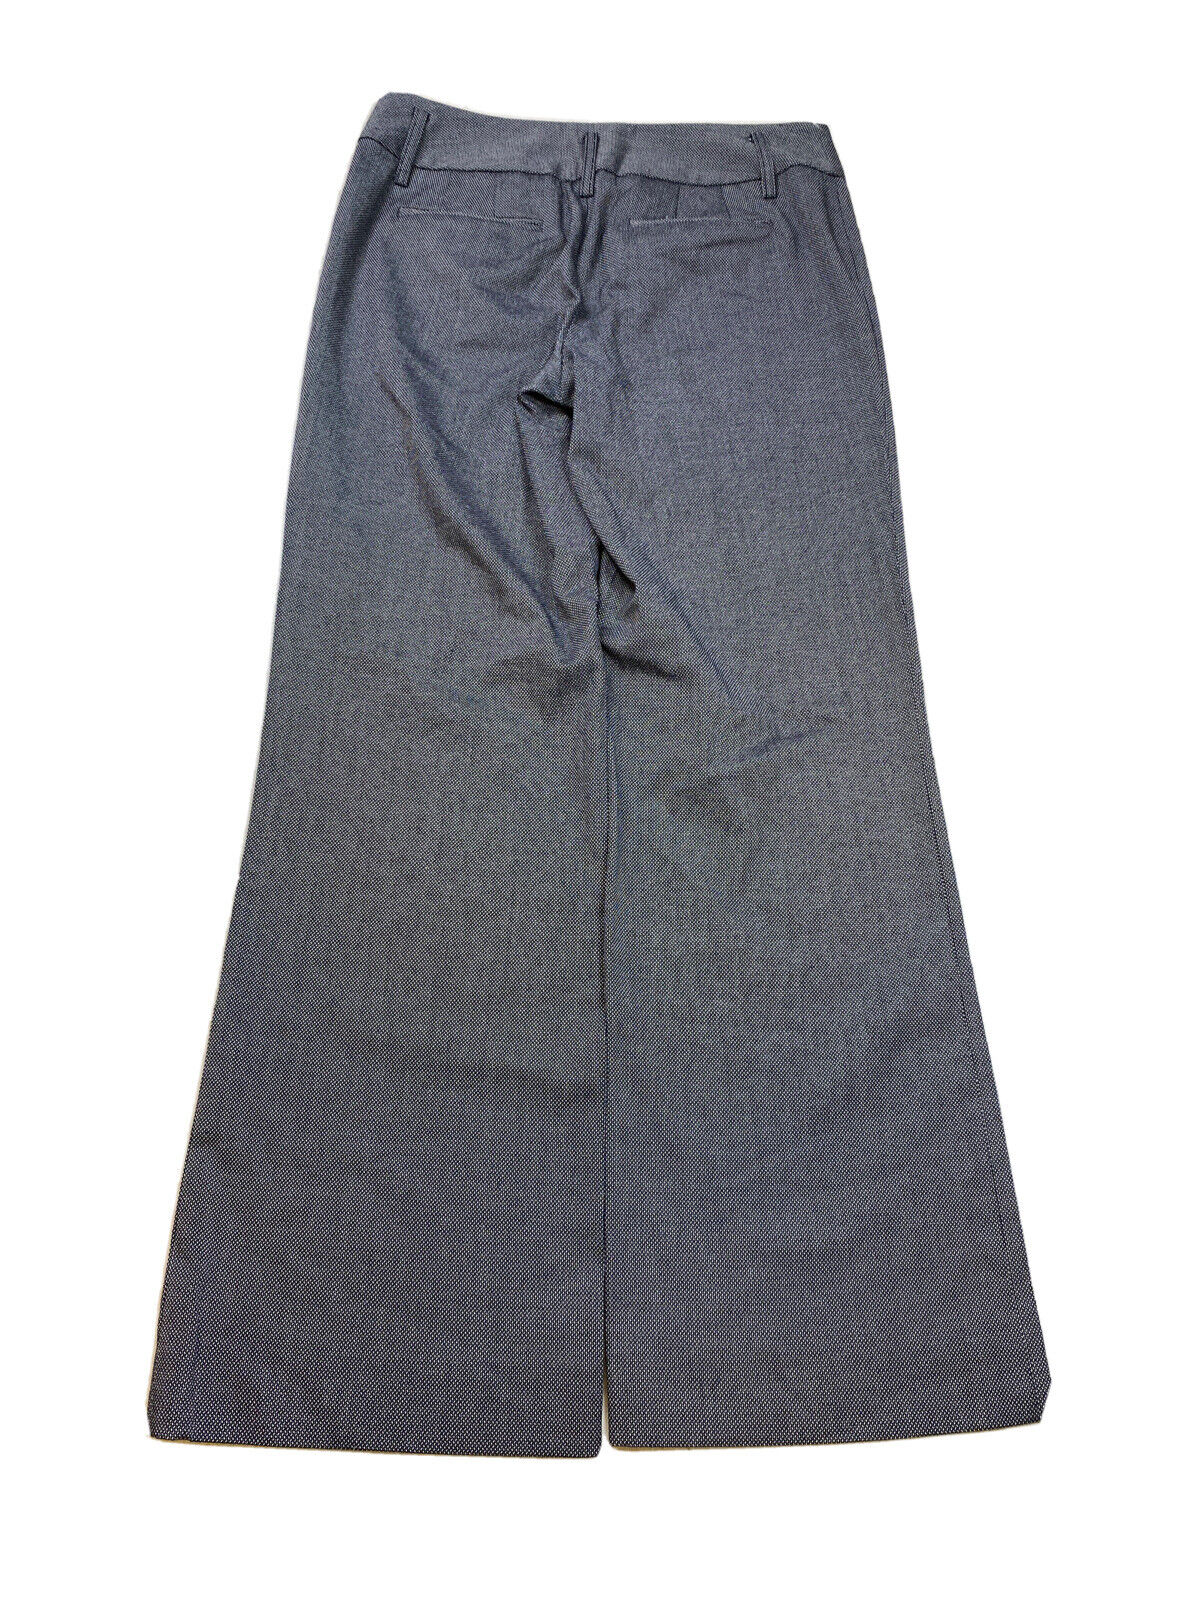 LOFT Women's Black Ann Bootcut Dress Pants - 2